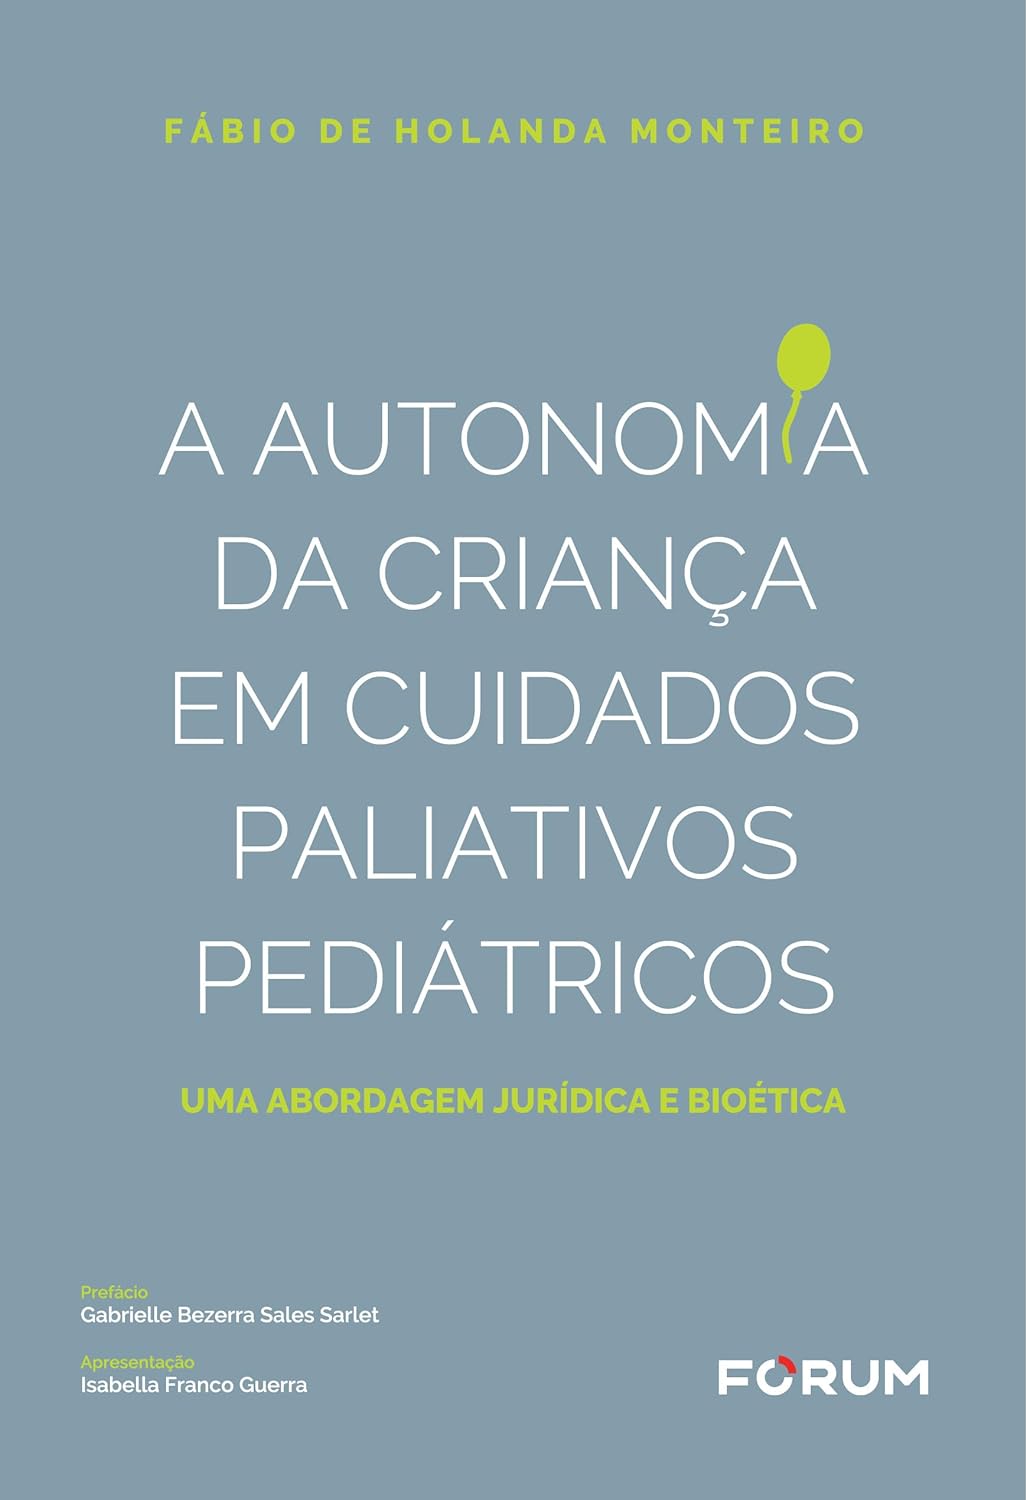 Baixar PDF 'A Autonomia da Criança em Cuidados Paliativos e Pediátricos' por Fábio de Holanda Monteiro